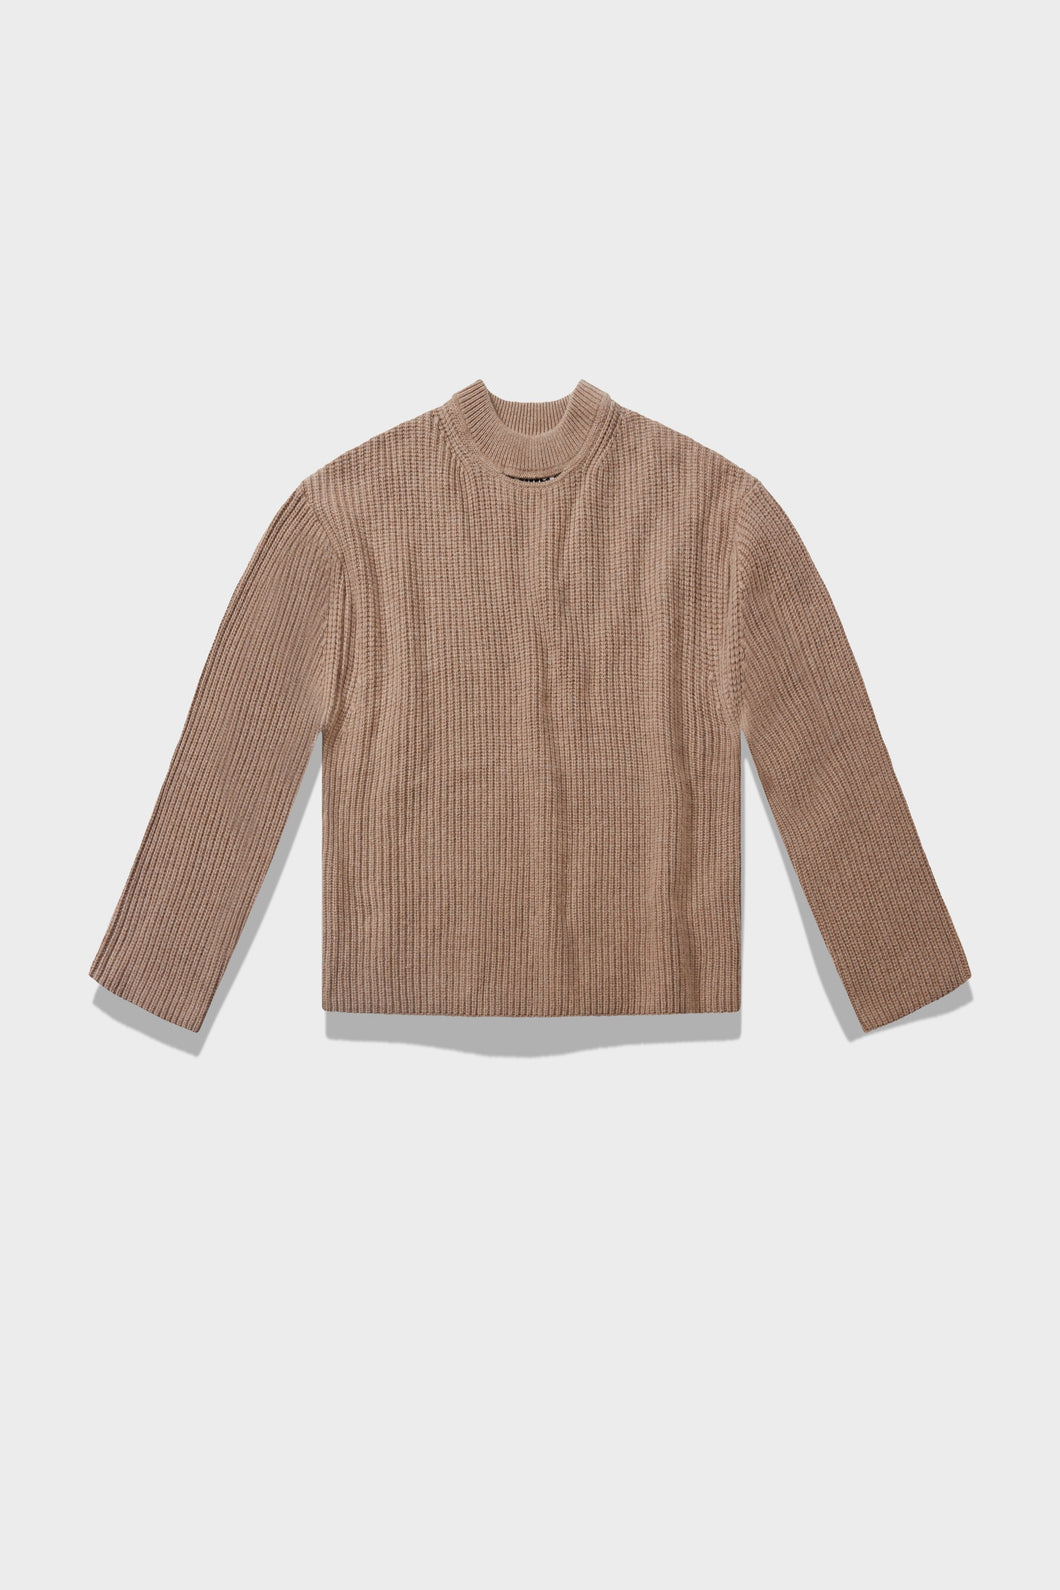 Altuzarra_Sweater with Slit-Sandstorm